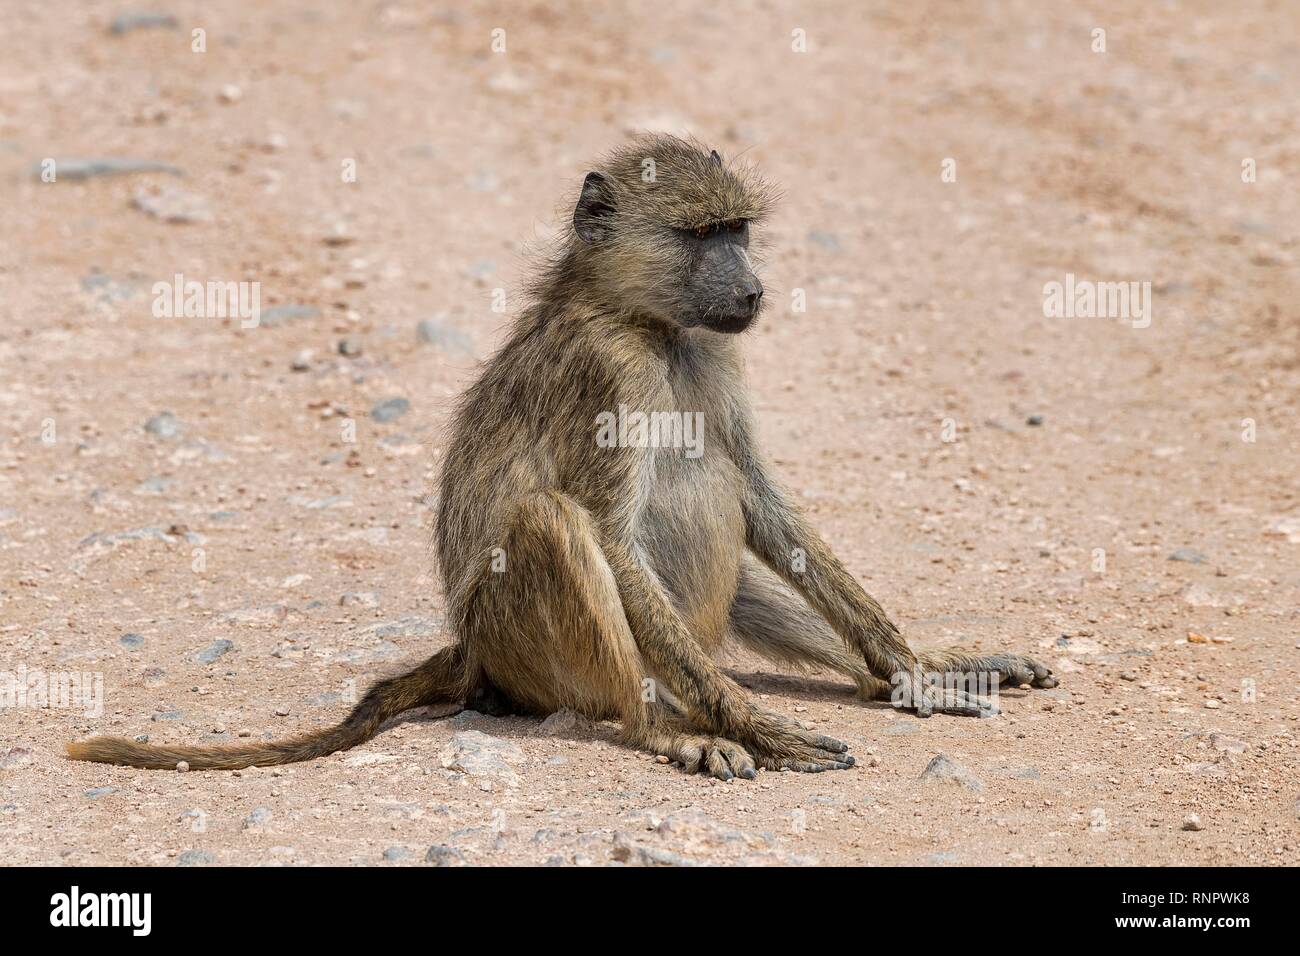 Yellow baboon (Papio cynocephalus), adult, sitting on the floor, Amboseli National Park, Kenya Stock Photo